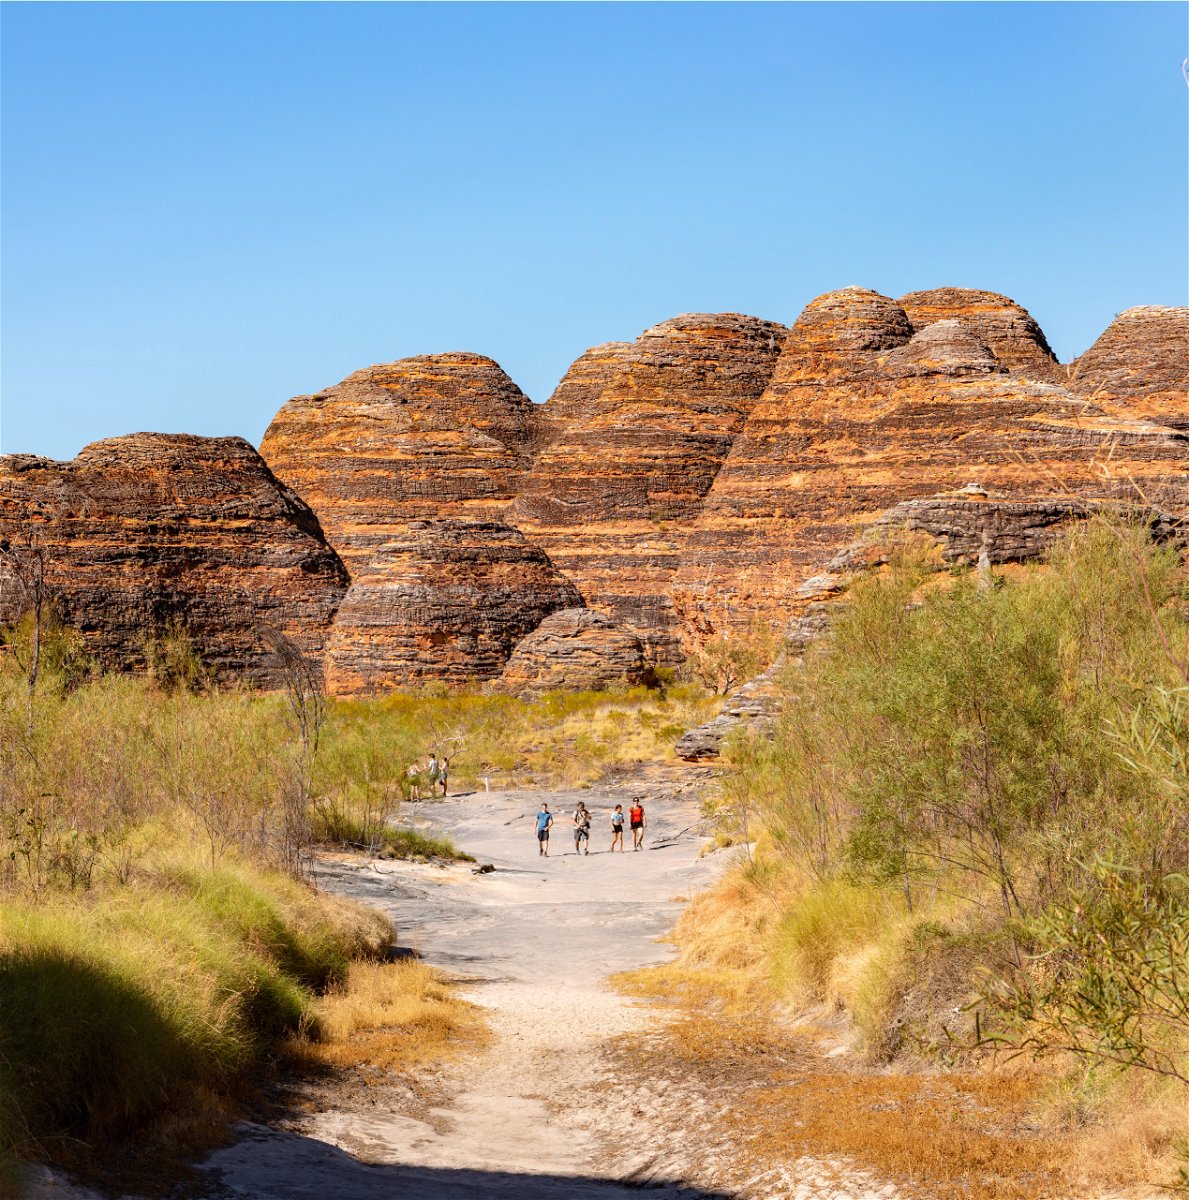 The Kimberleys Purnululu Domes in Australia